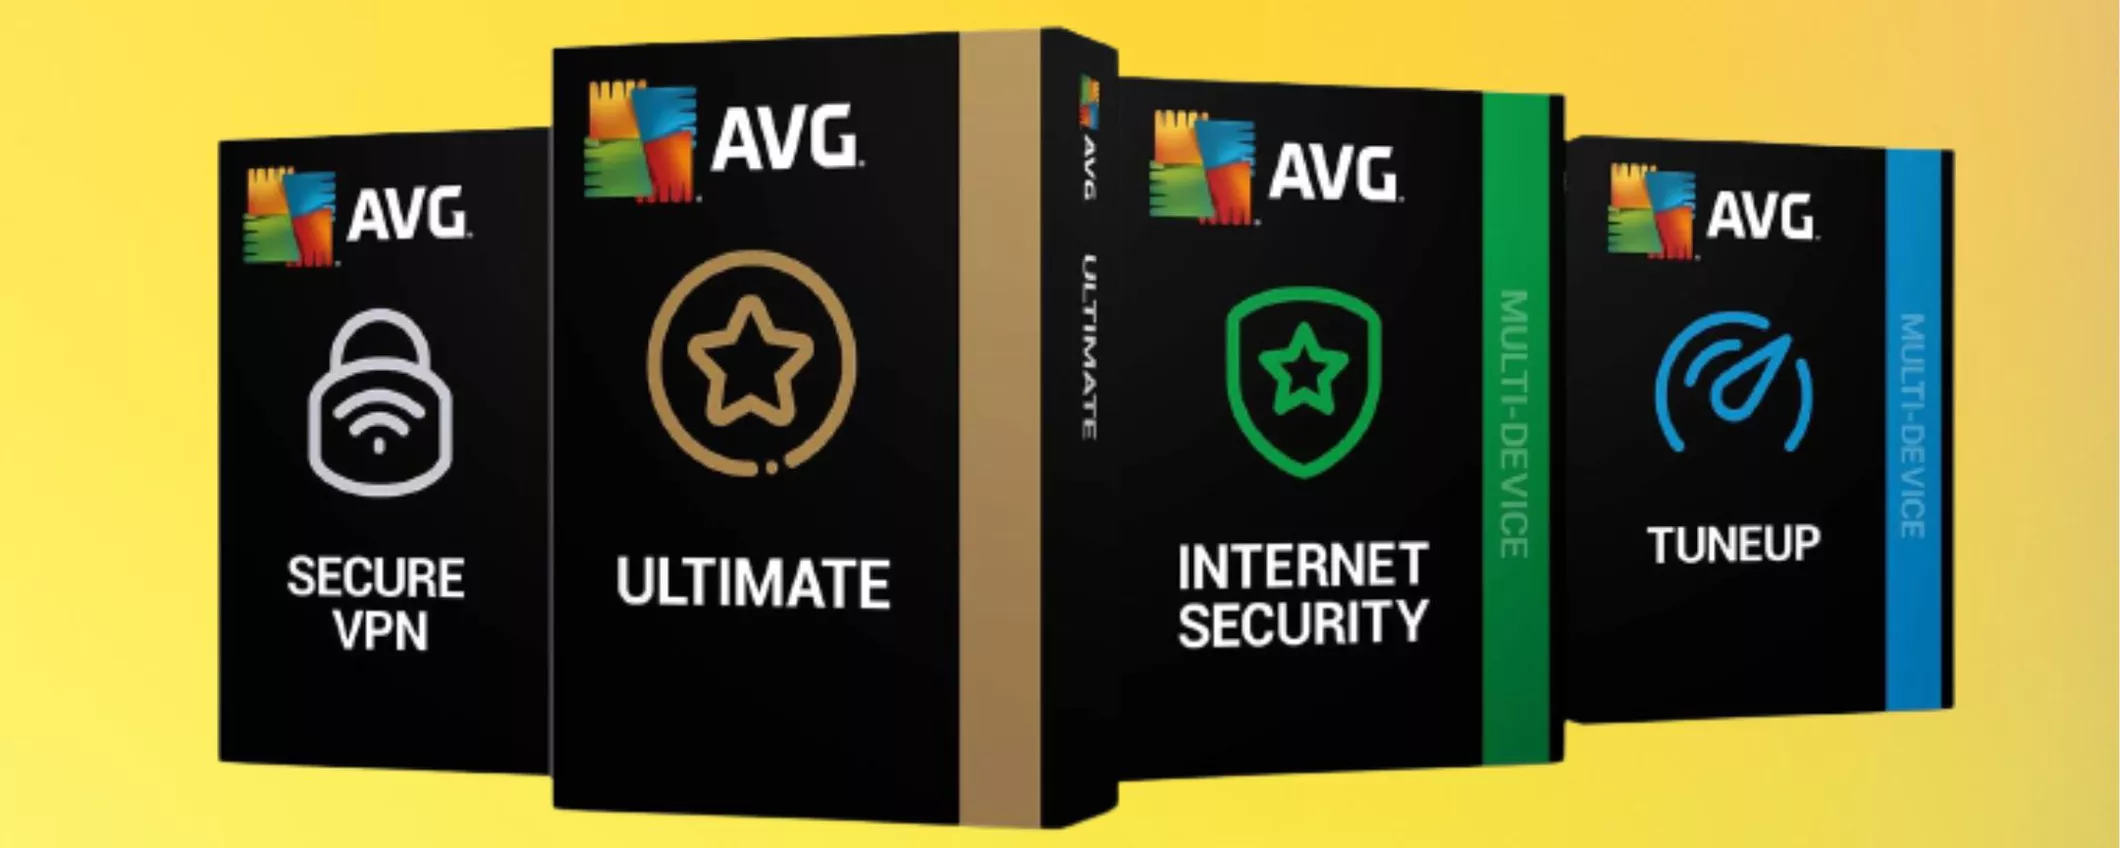 AVG Ultimate a metà prezzo! Proteggi e velocizza i tuoi dispositivi